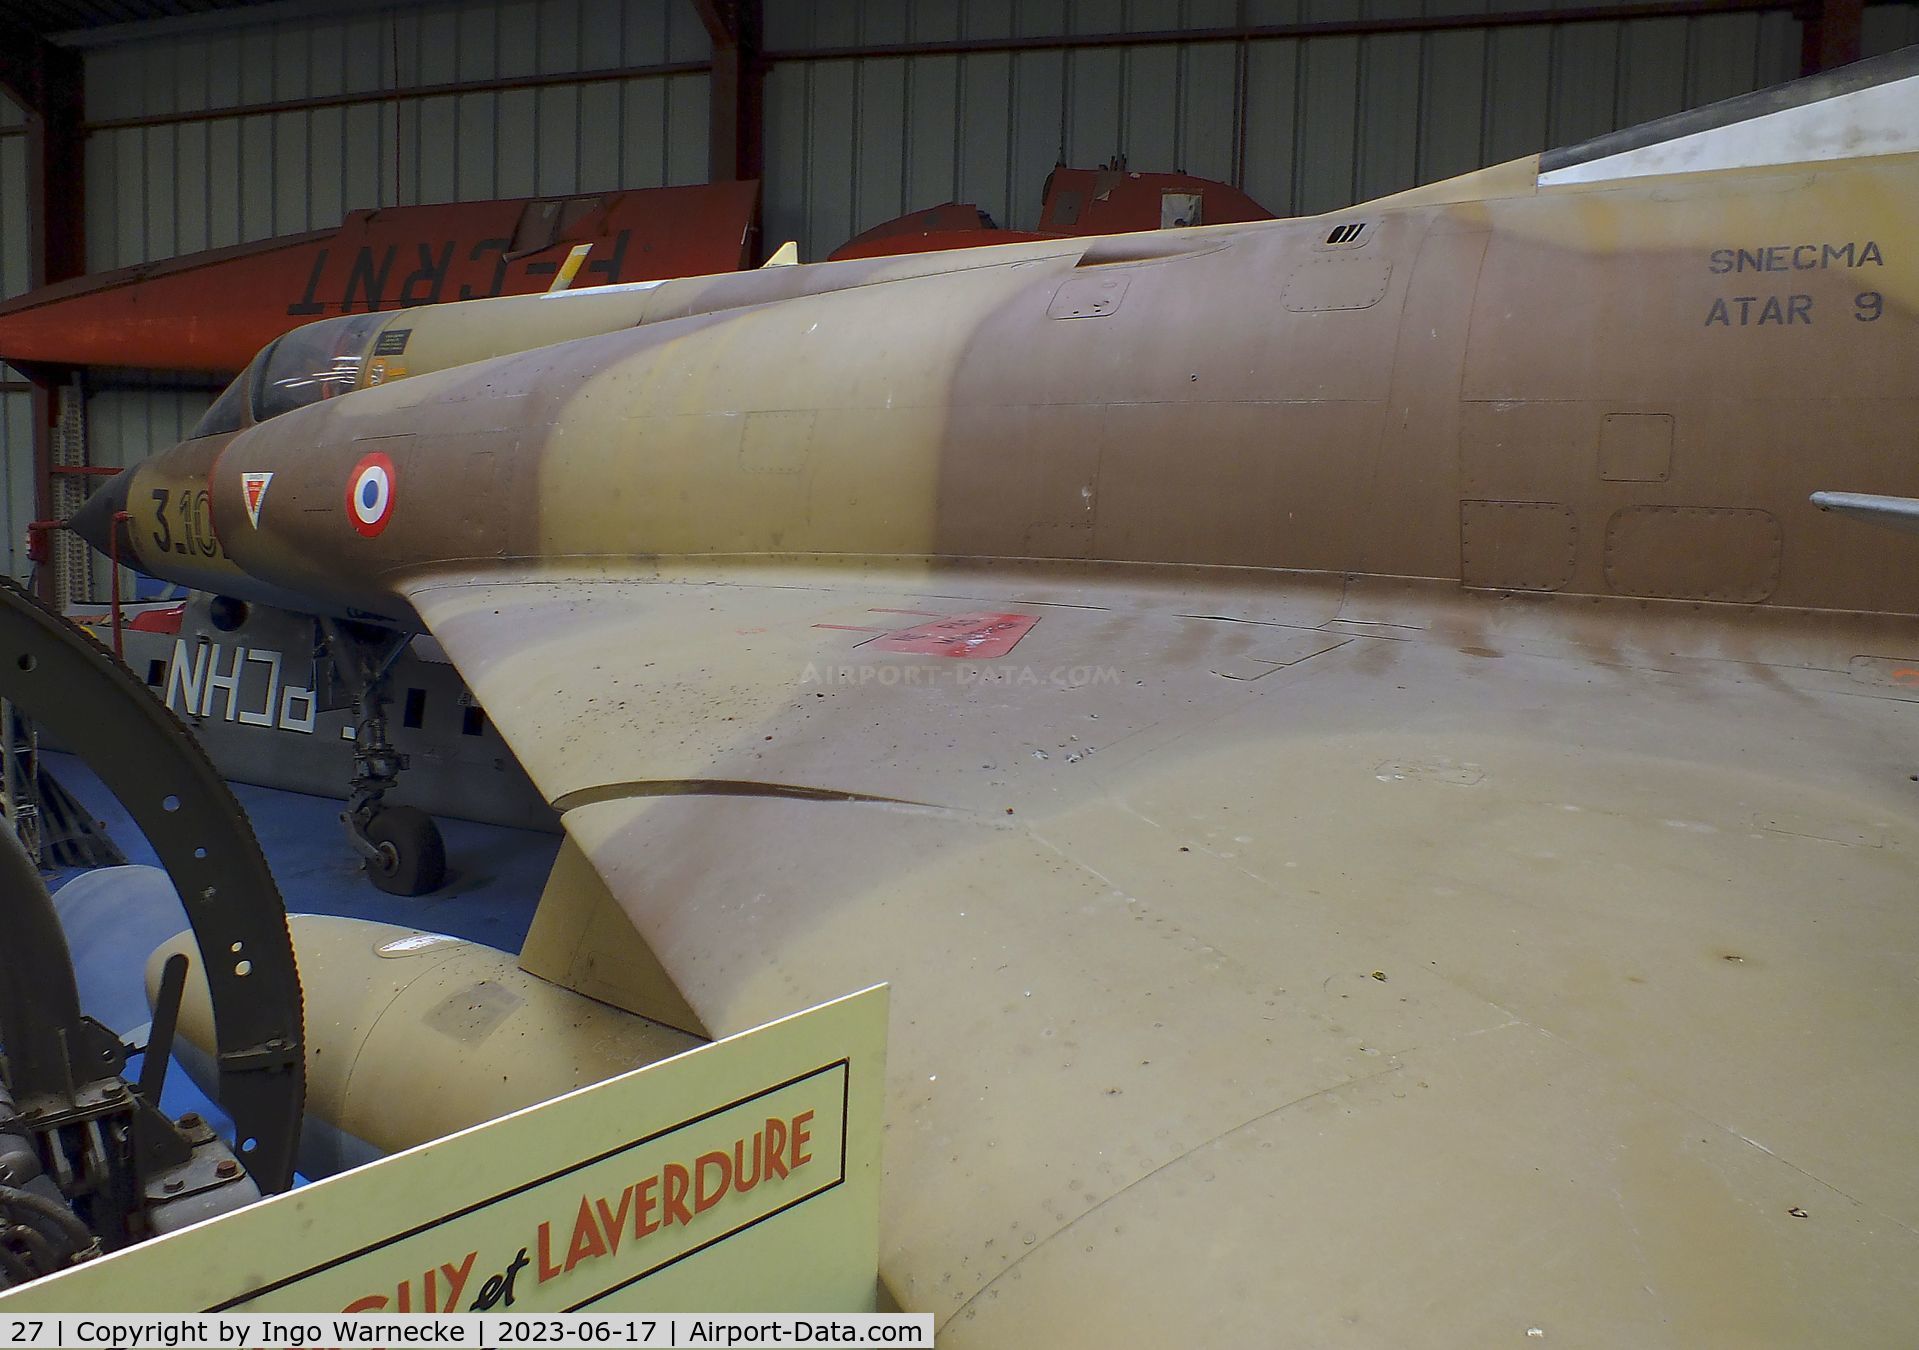 27, Dassault Mirage IIIC C/N 27, Dassault Mirage III C at the Musee de l'Epopee de l'Industrie et de l'Aeronautique, Albert